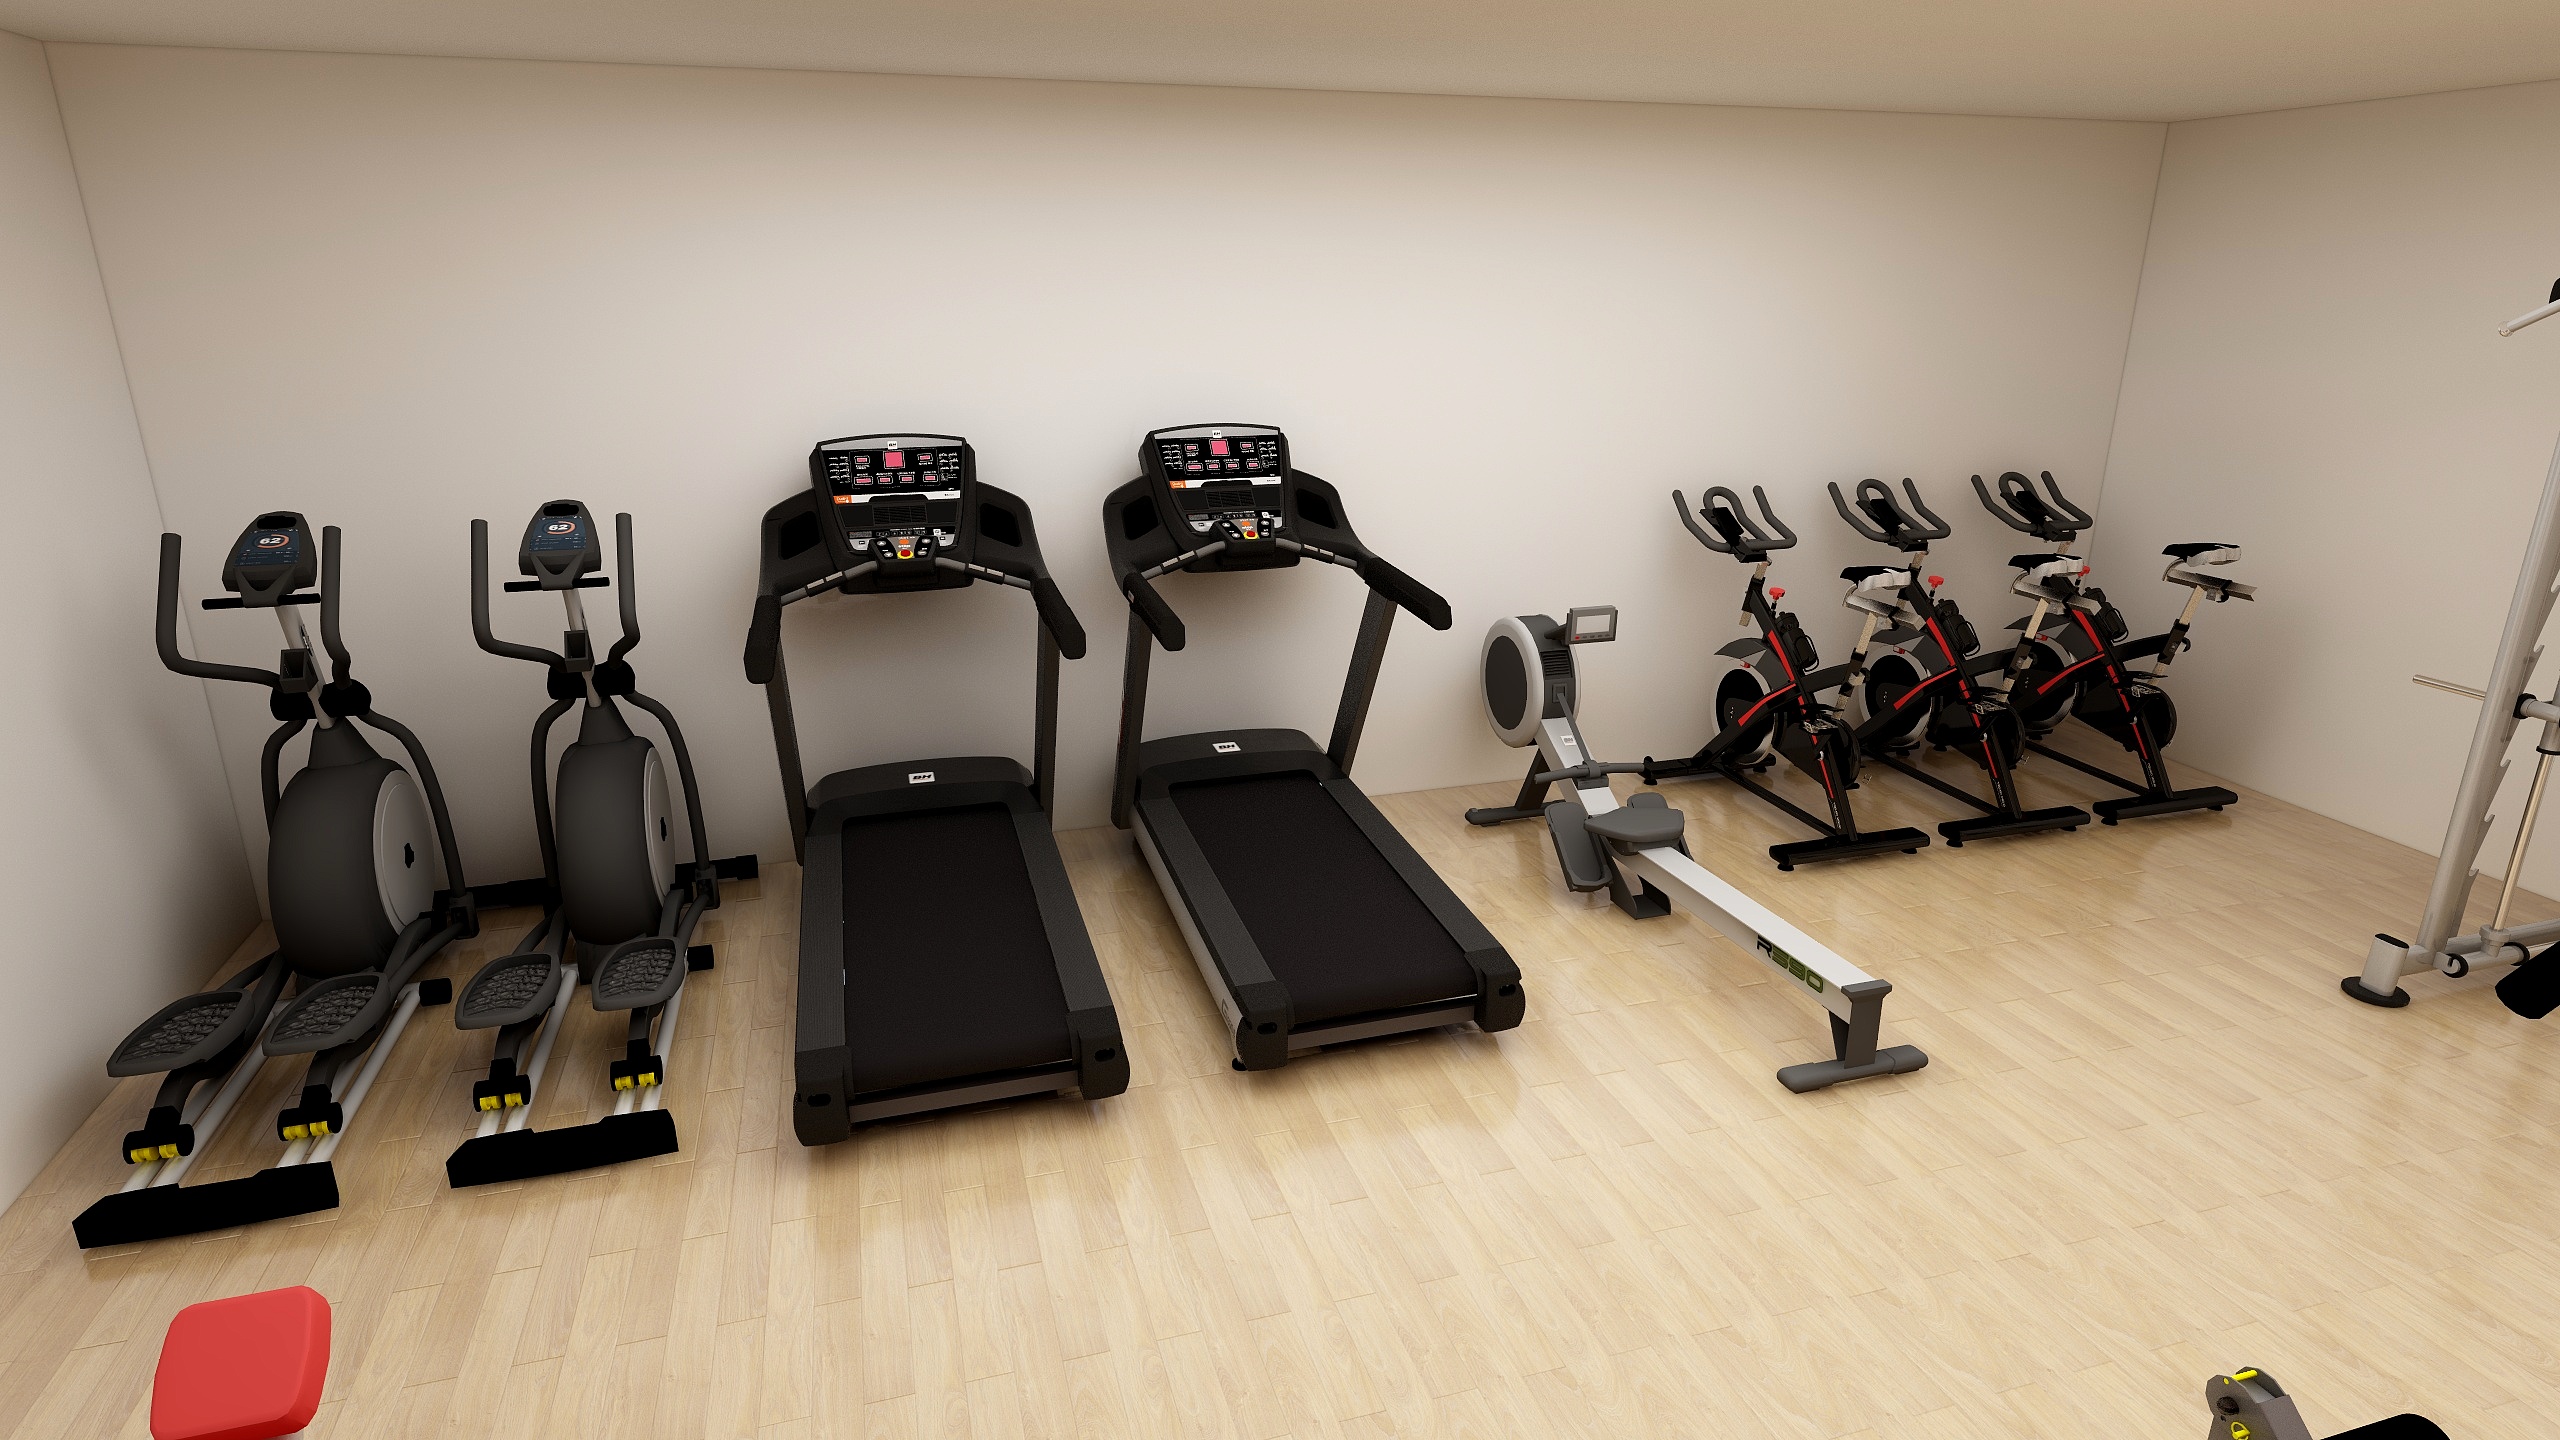 6969跑步机,动感单车,椭圆机,是常见的健身房有氧运动器械,能有效